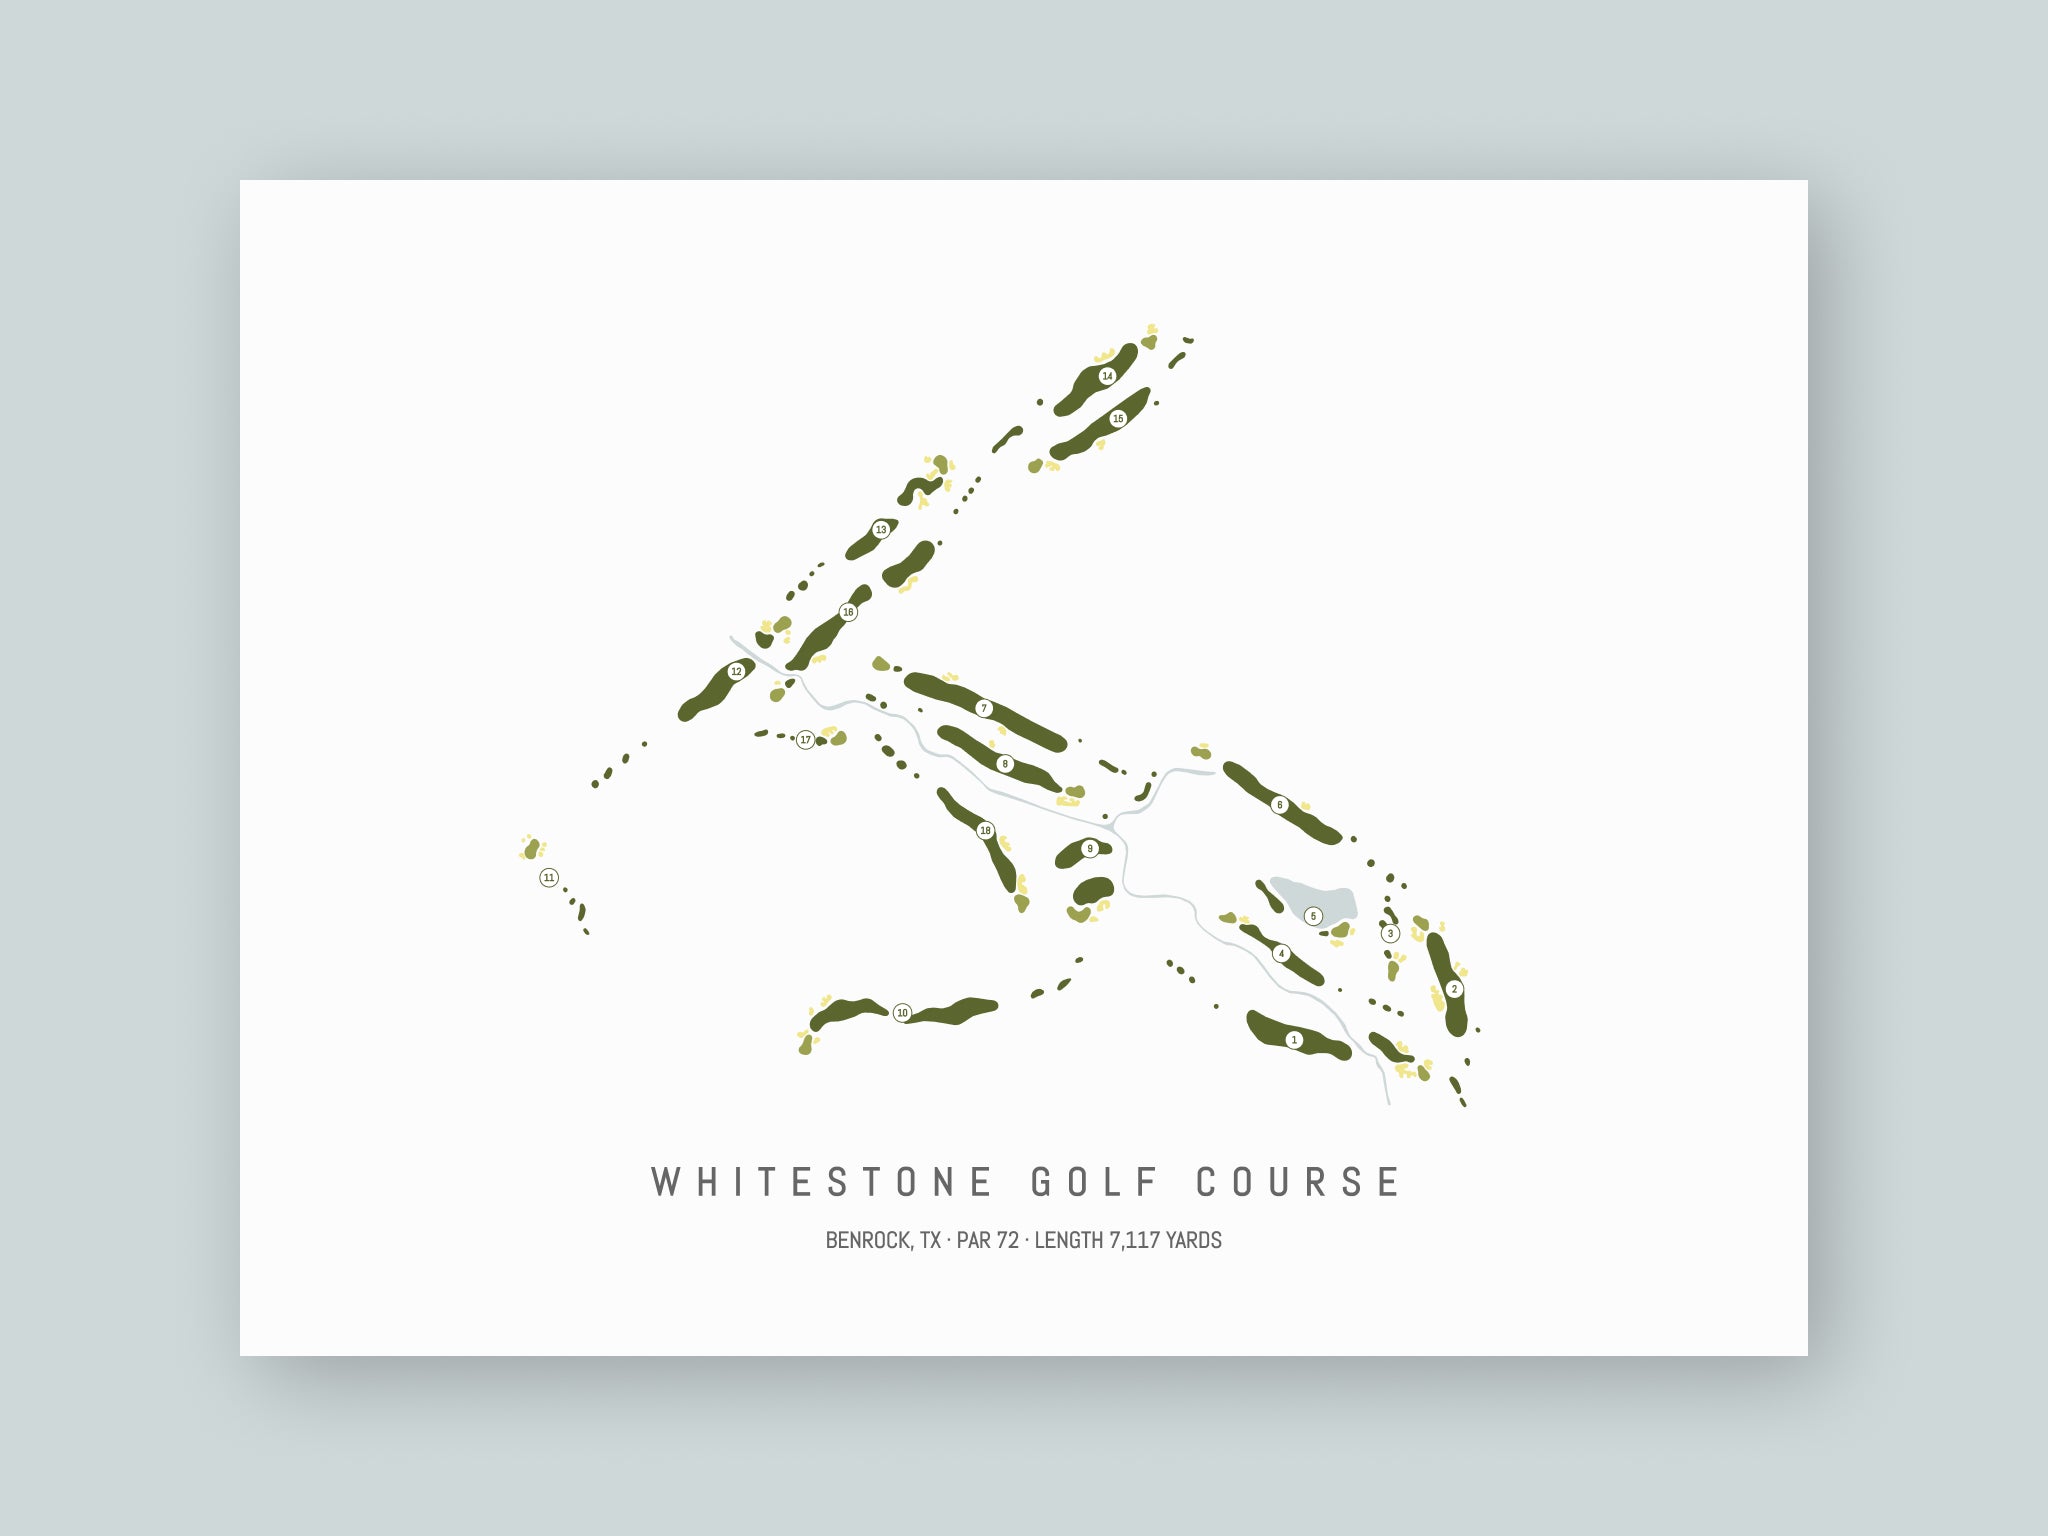 Whitestone Golf Course